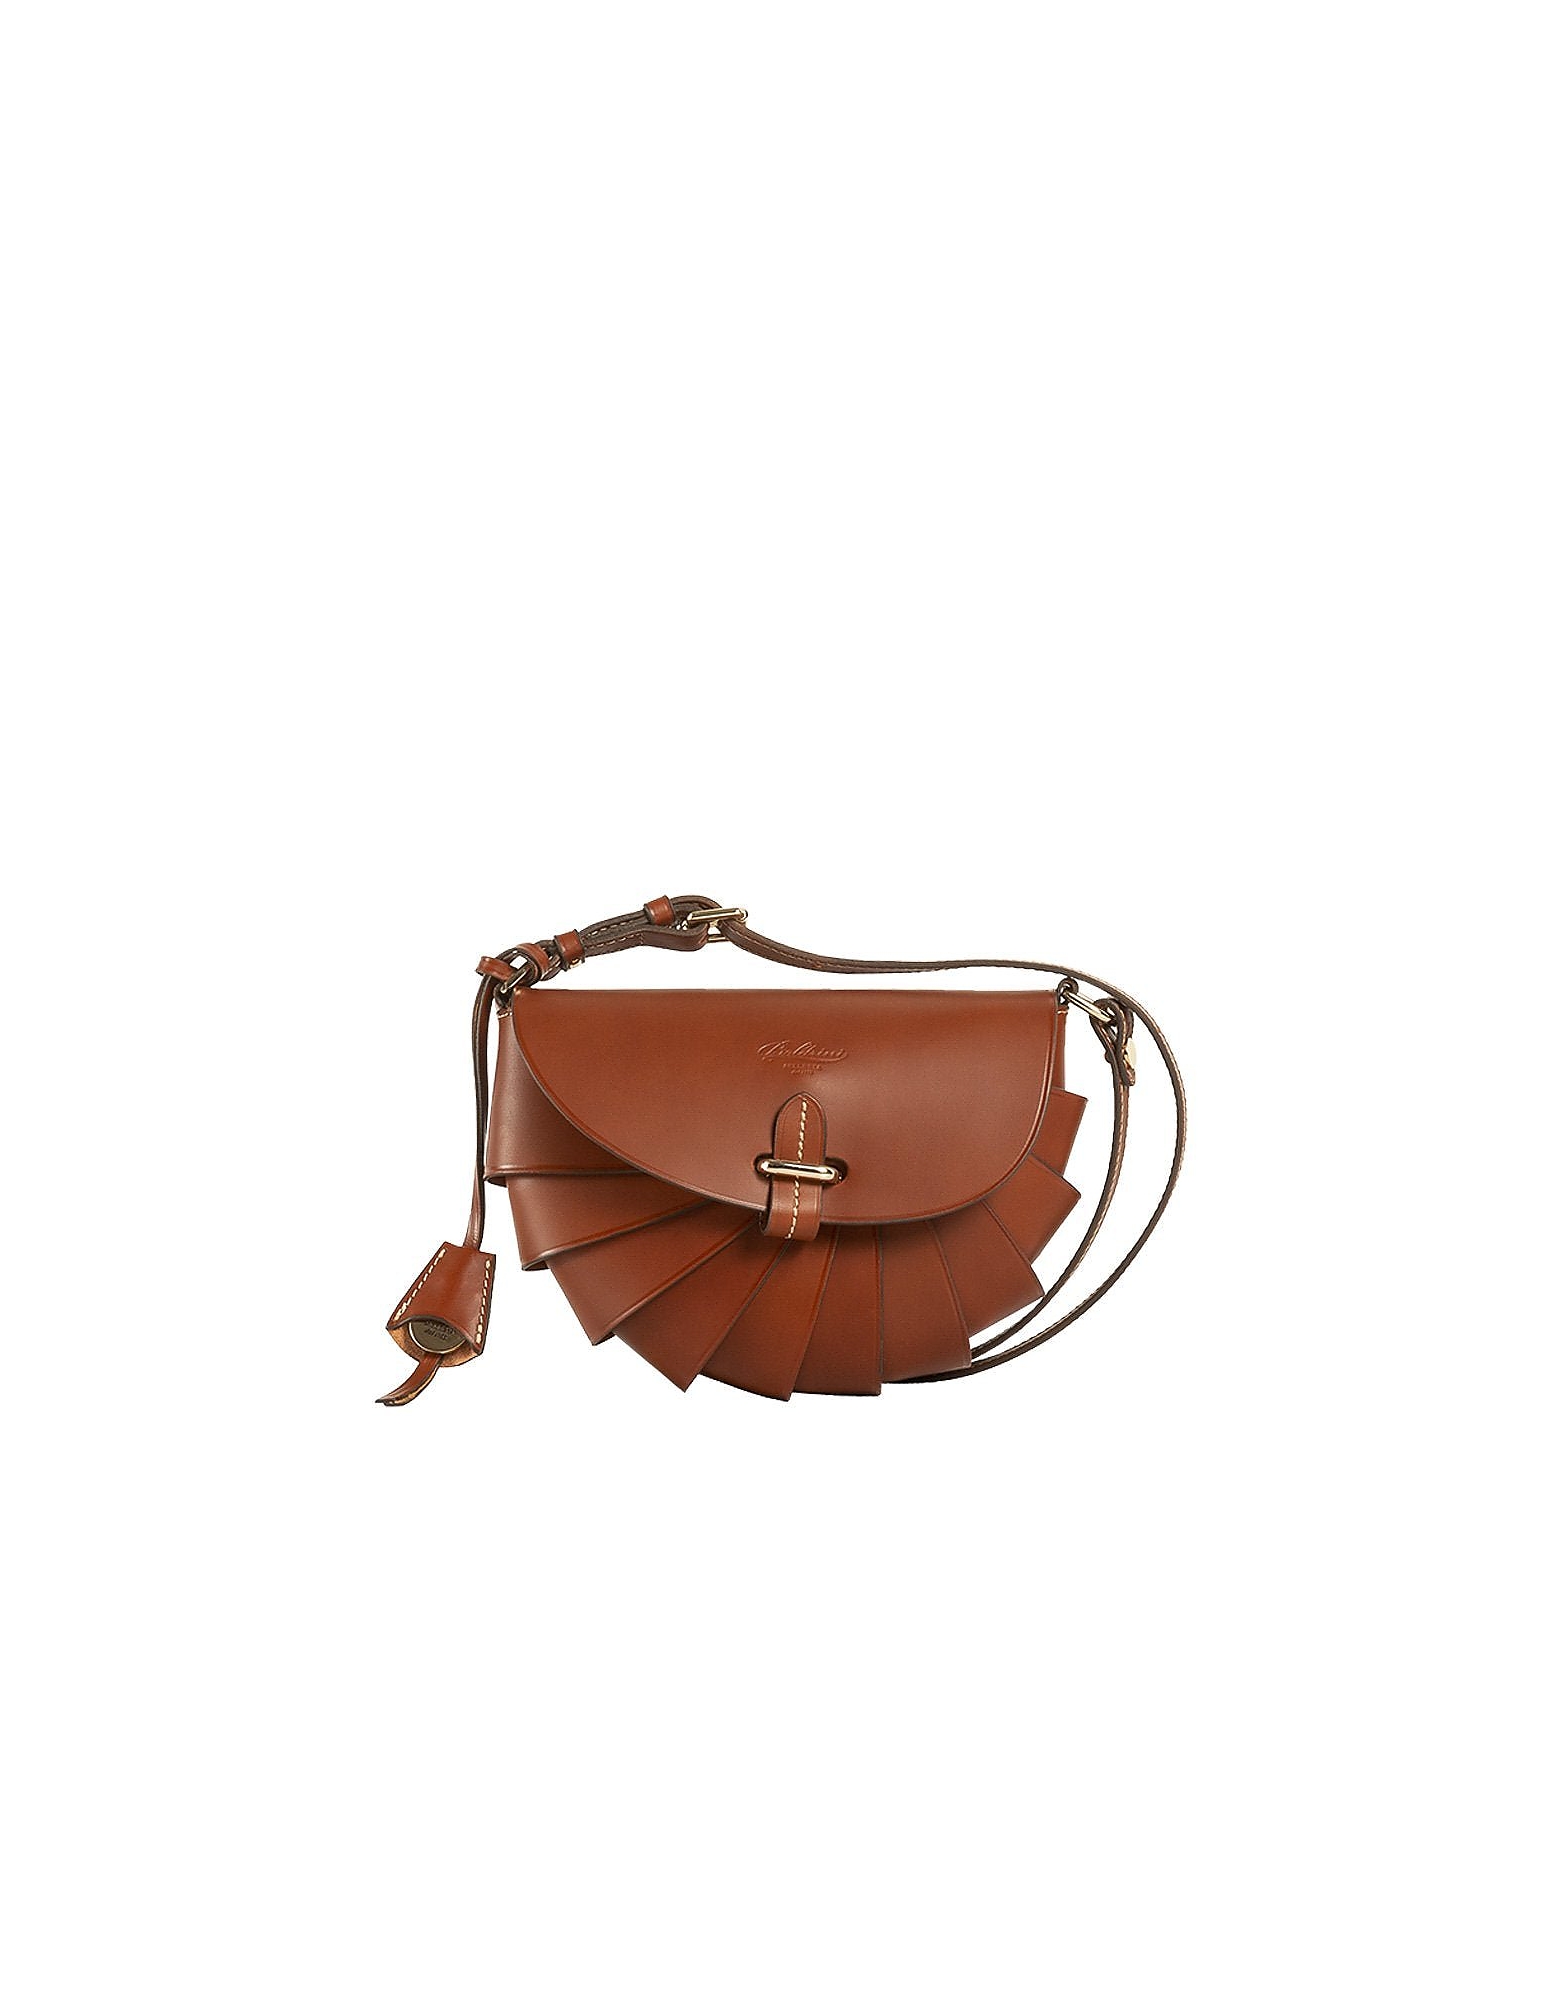 Boldrini Selleria Designer Handbags Operetta - Crossbody Bag In Marron